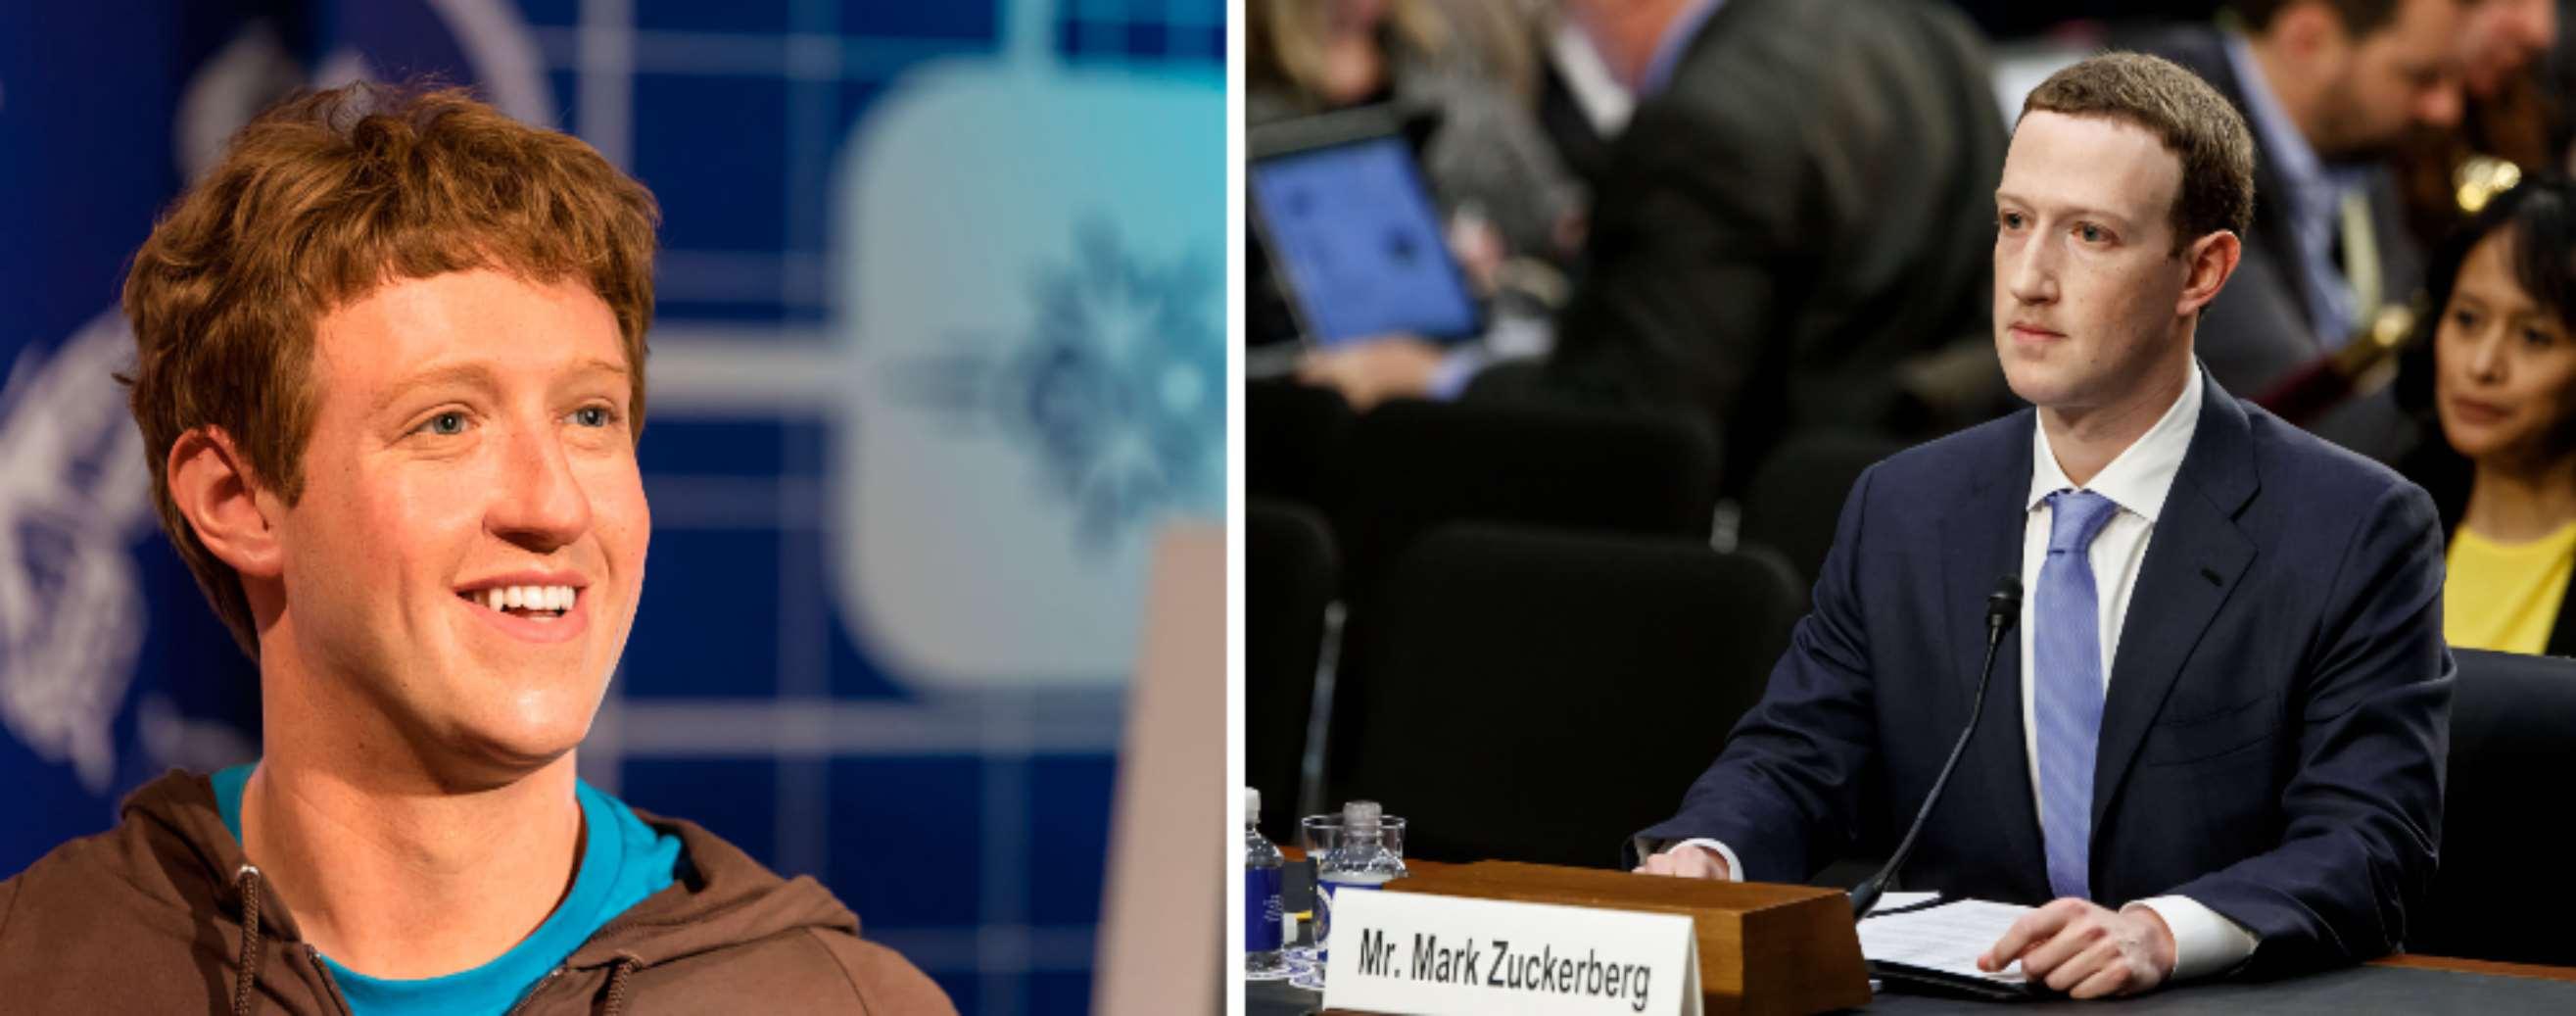 Студент Гарварда Марк Цукерберг в 2004 году и CEO Facebook мистер Марк 
Цукерберг в 2020 